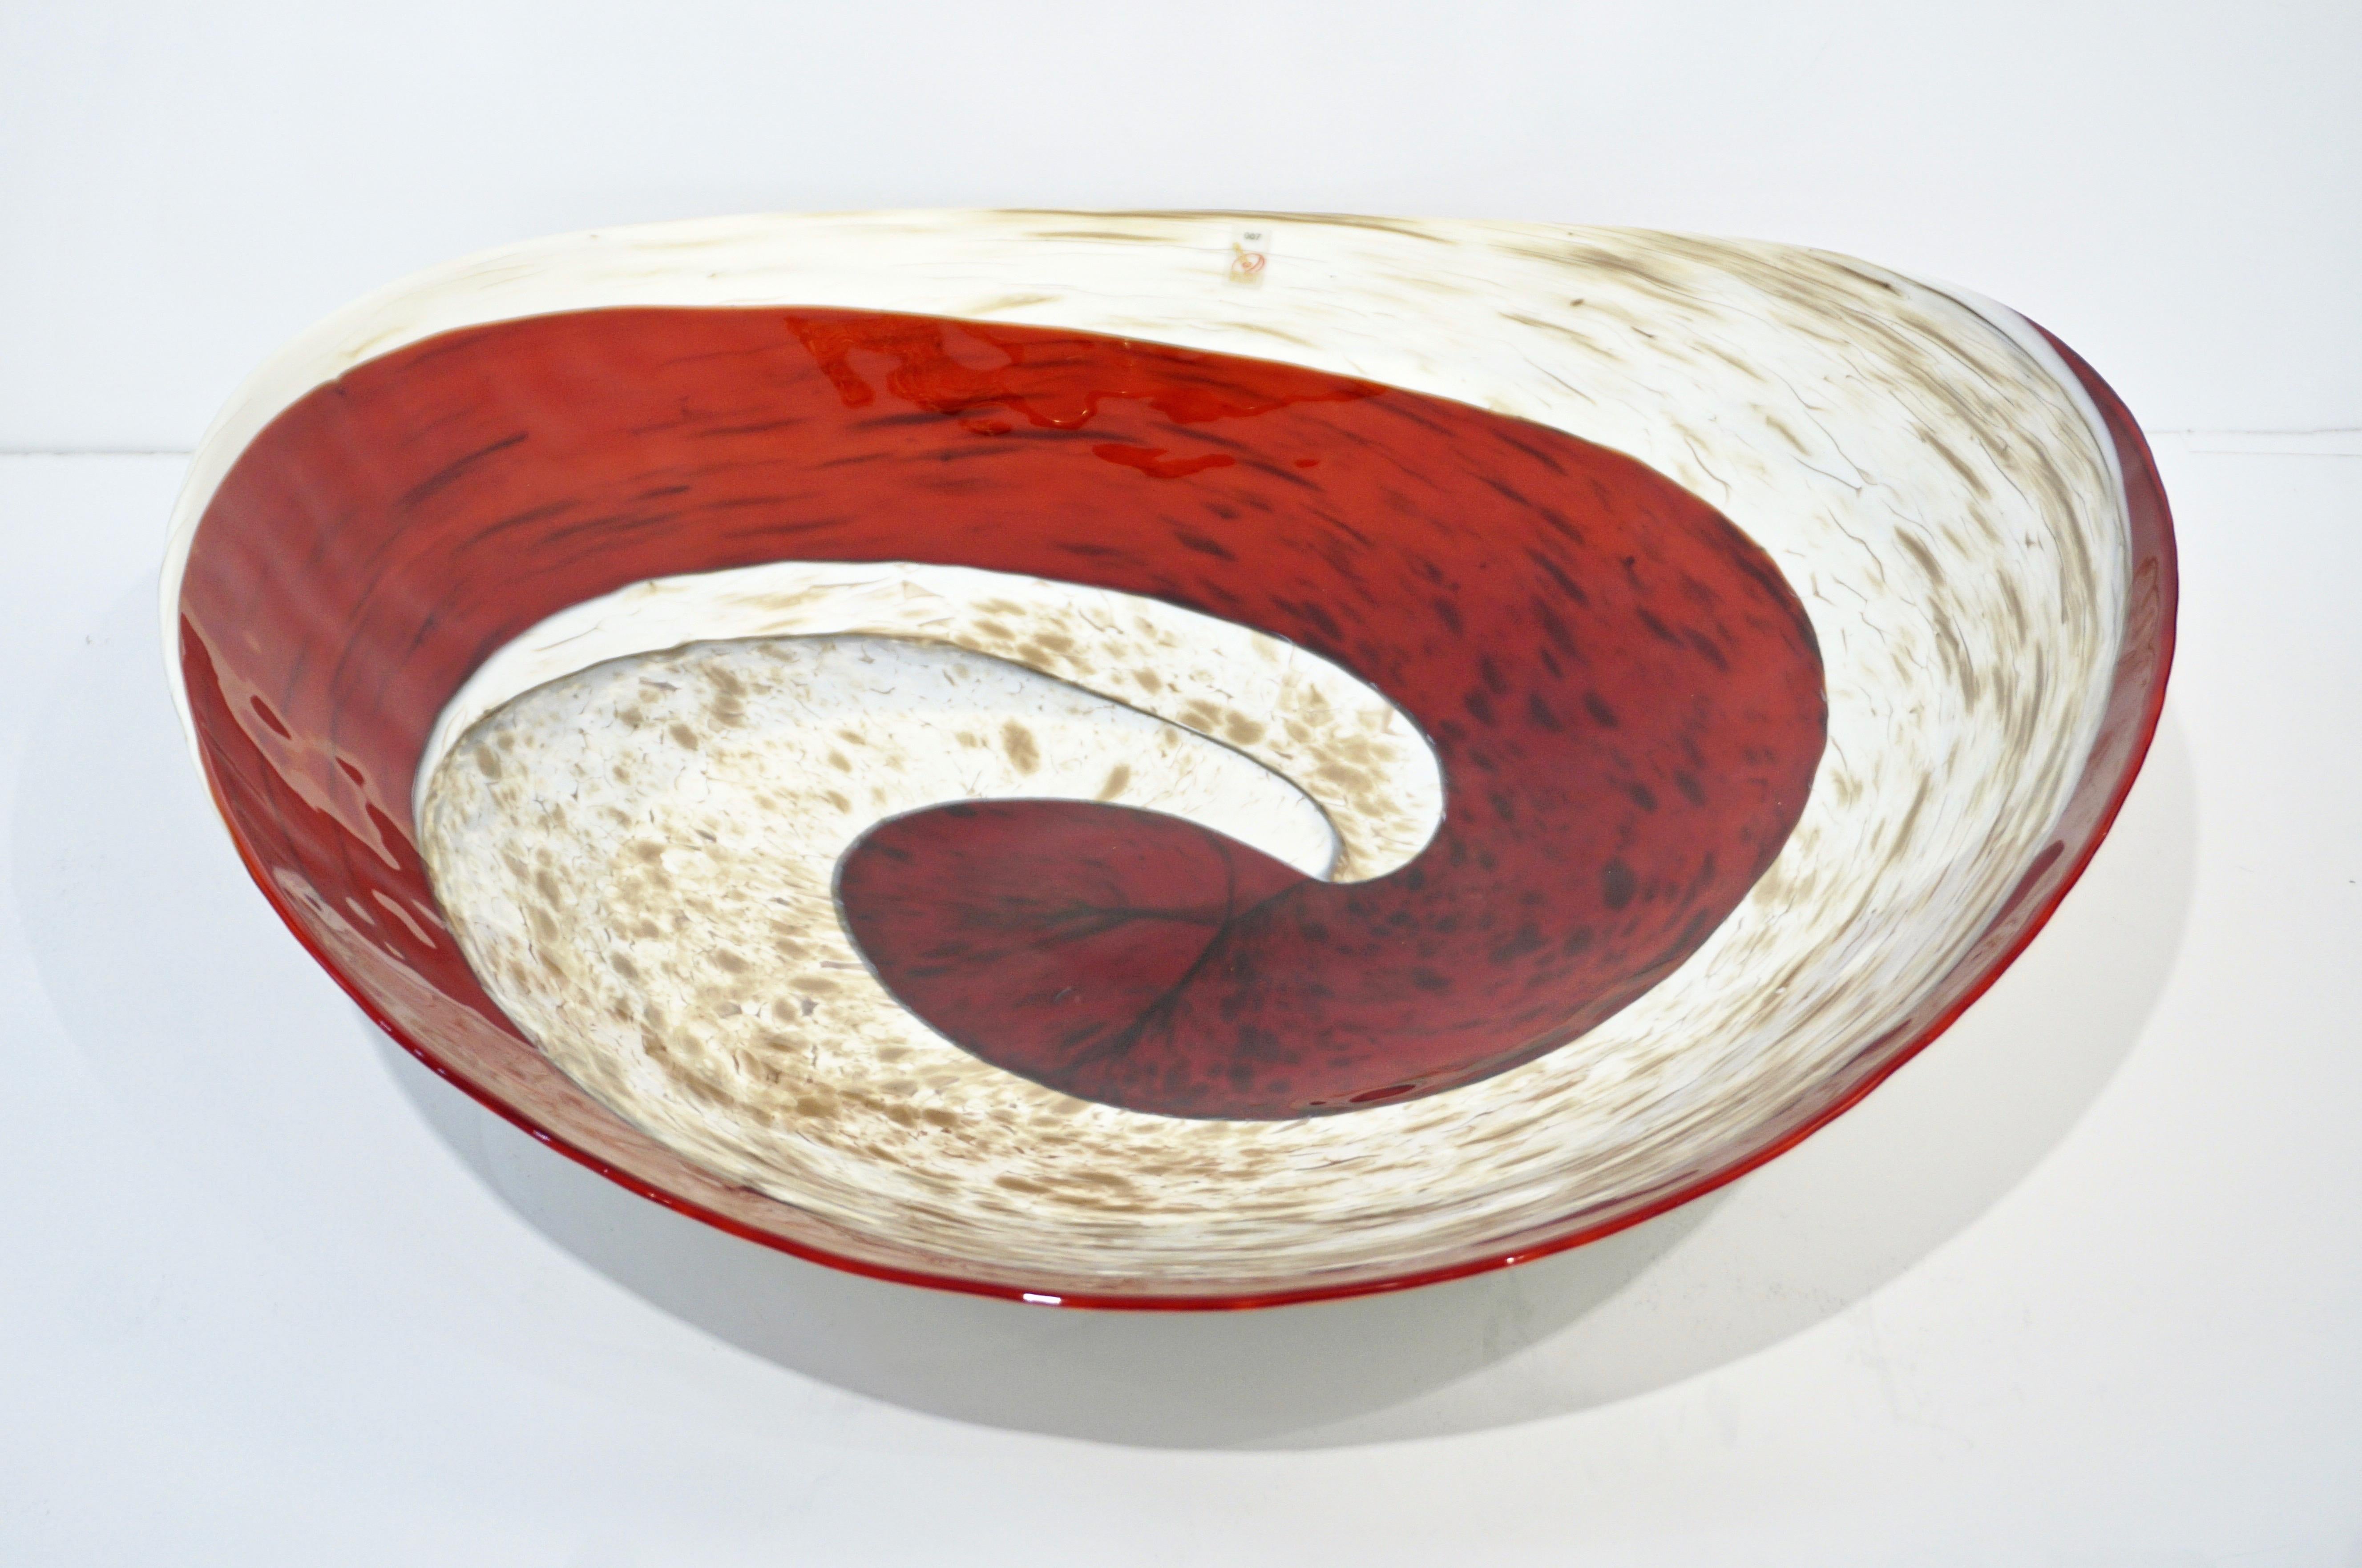 Hand-Crafted Organic Italian Pearl White Murano Glass Bowl with Swirled Wine Red Murrine